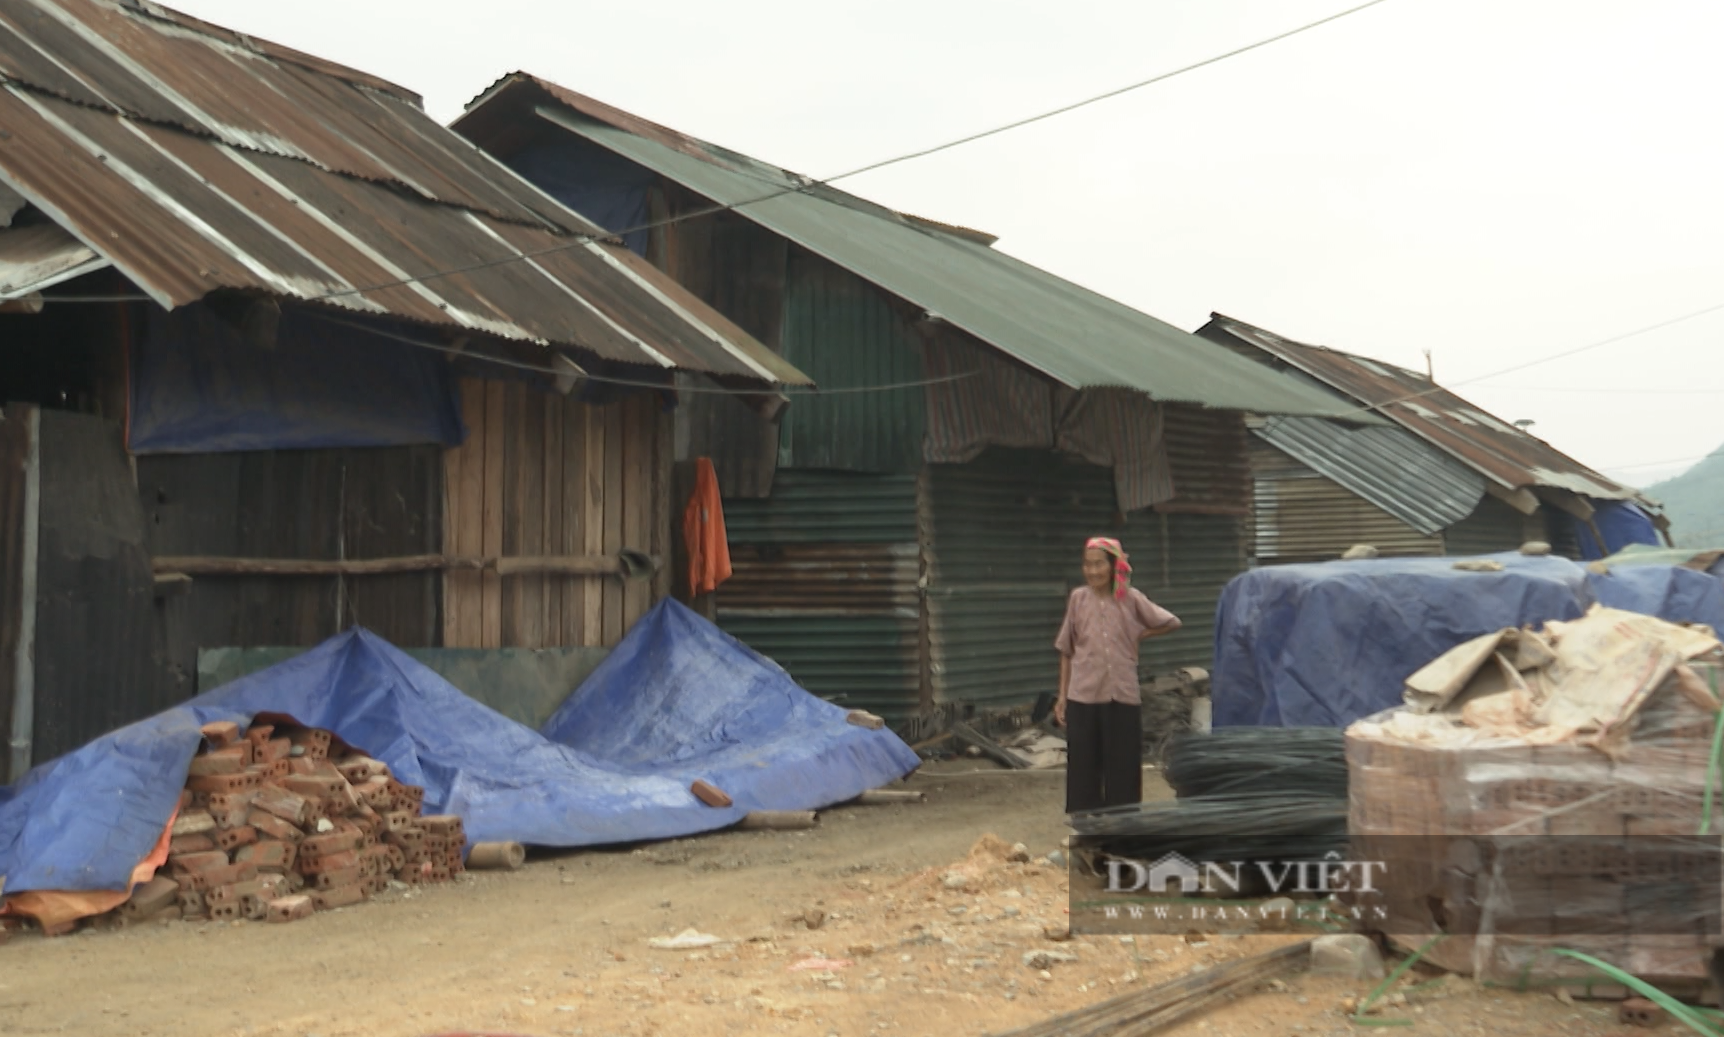 Xoá nhà tạm, nhà dột nát, một giải pháp căn cơ để giảm nghèo ở Lai Châu - Ảnh 4.